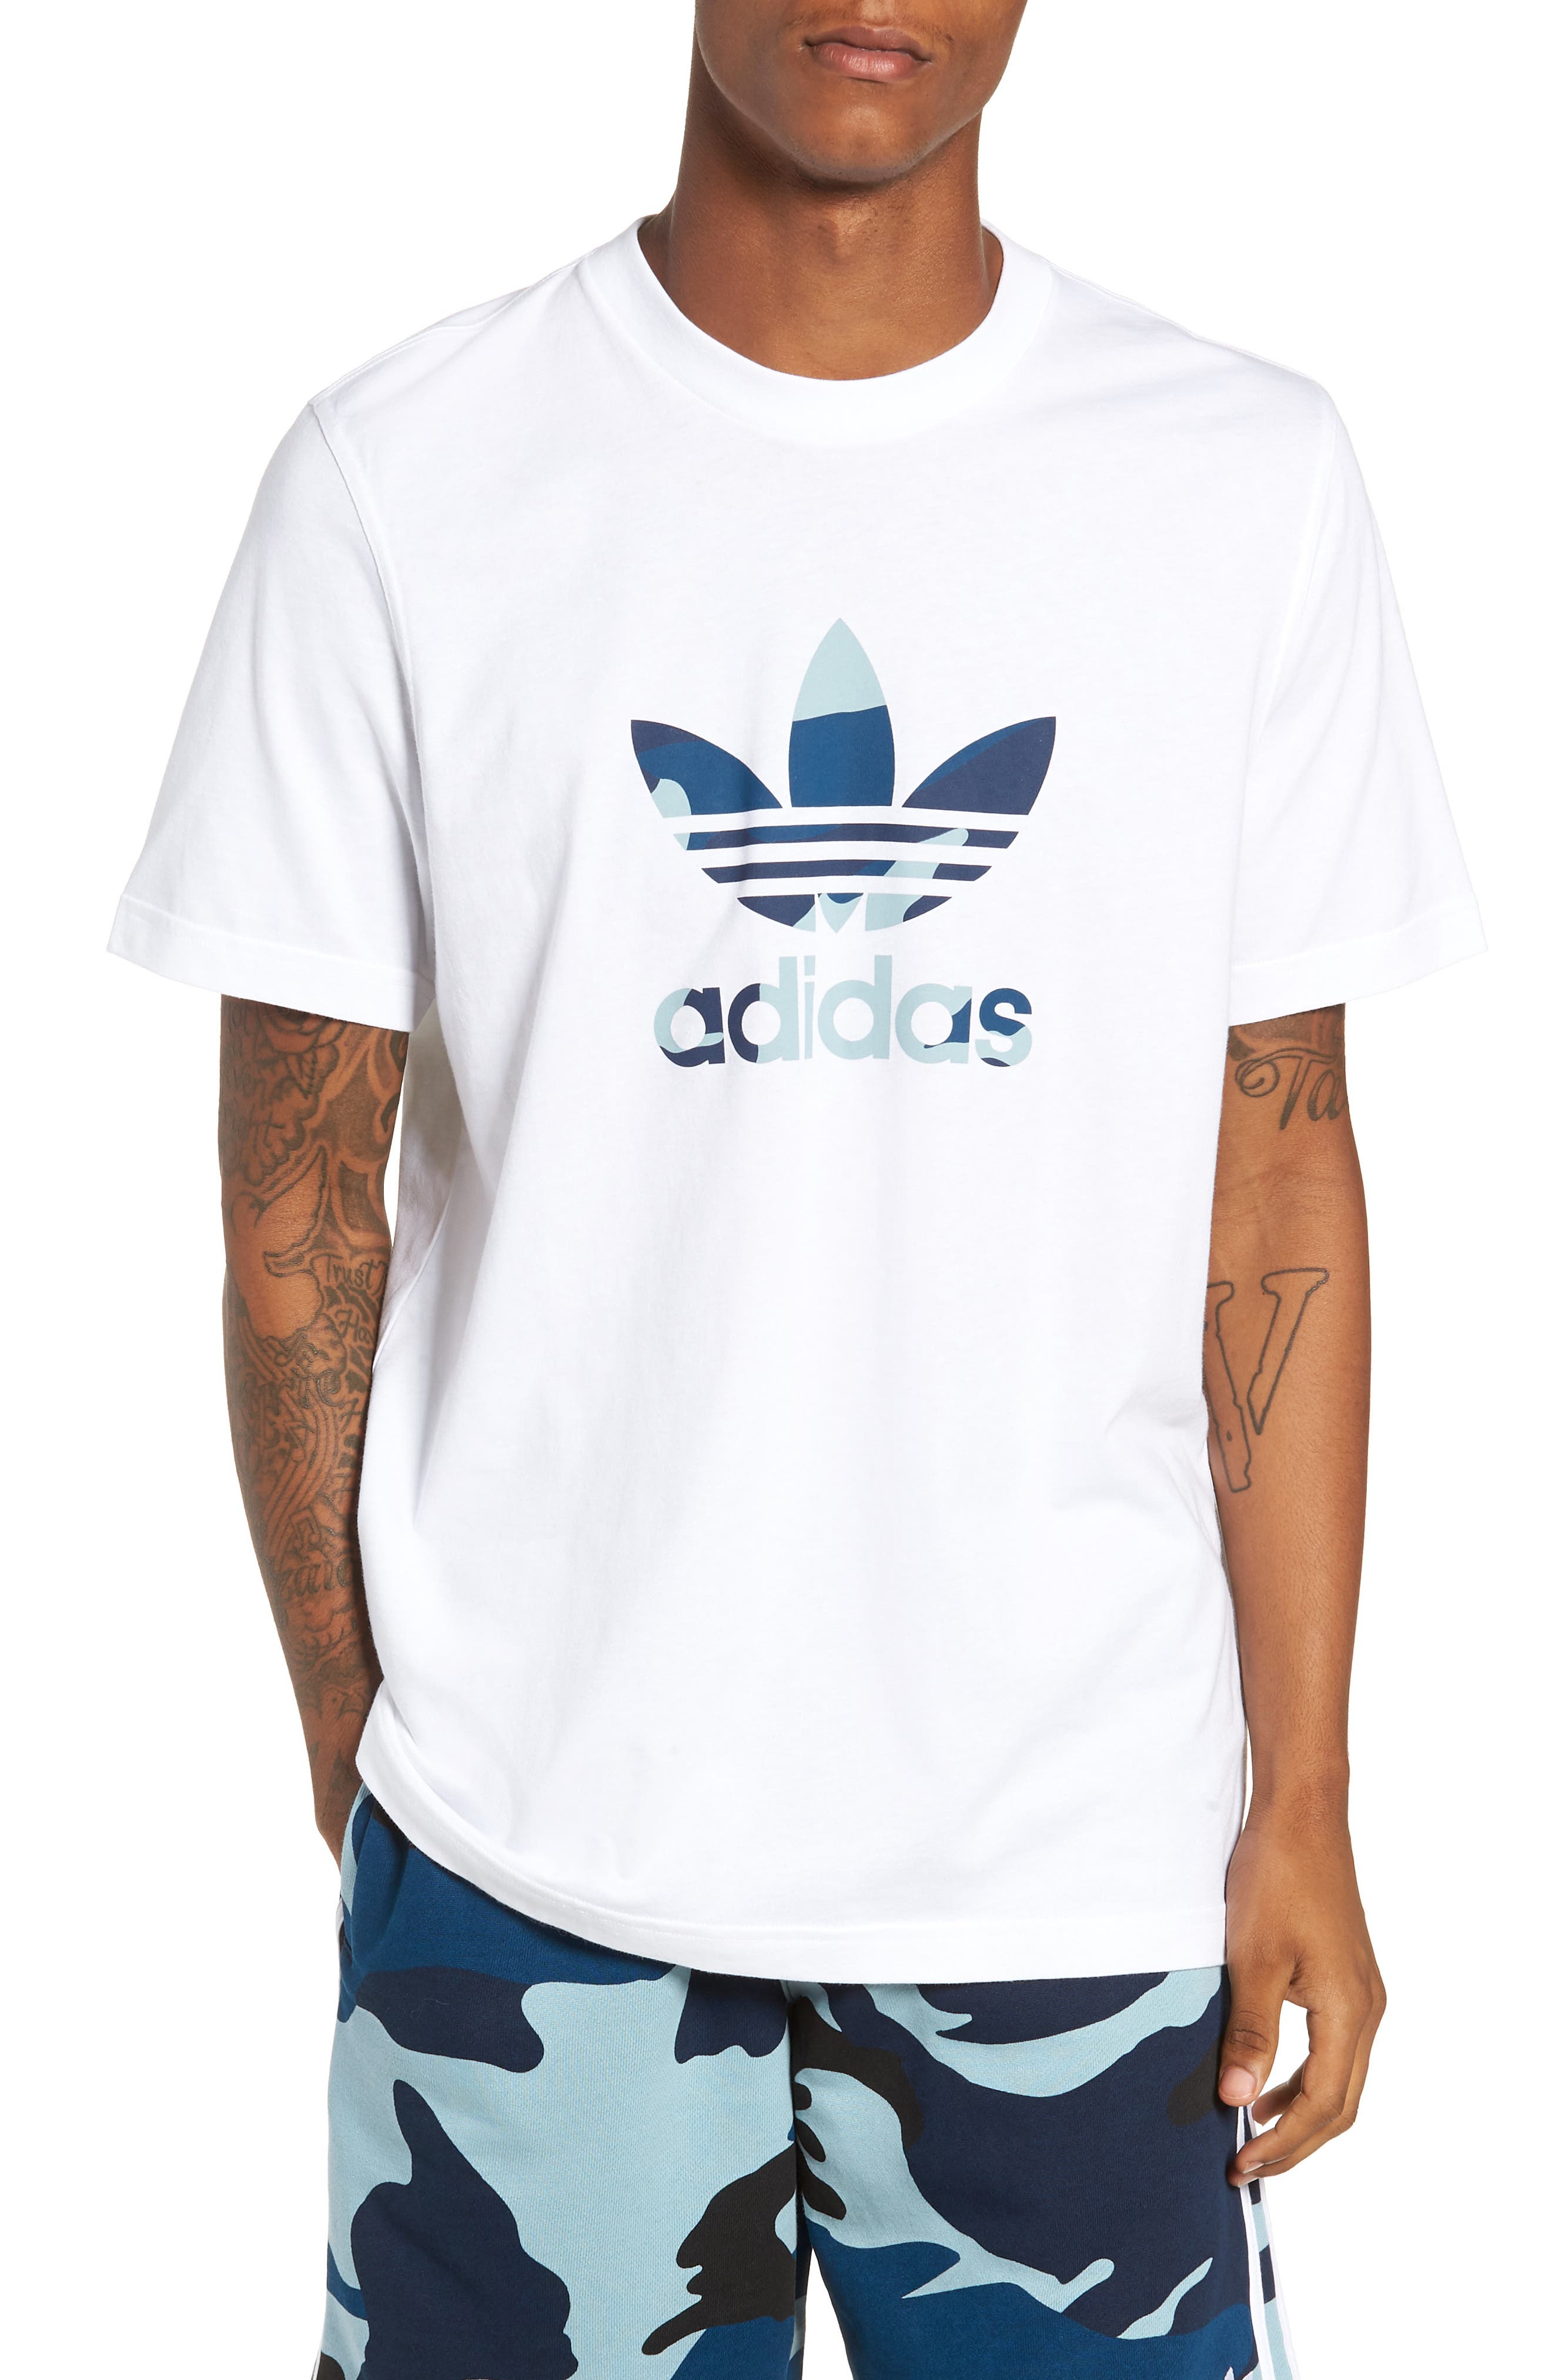 UPC 192609996263 product image for Men's Adidas Originals Camo Trefoil Logo T-Shirt, Size Medium - White | upcitemdb.com